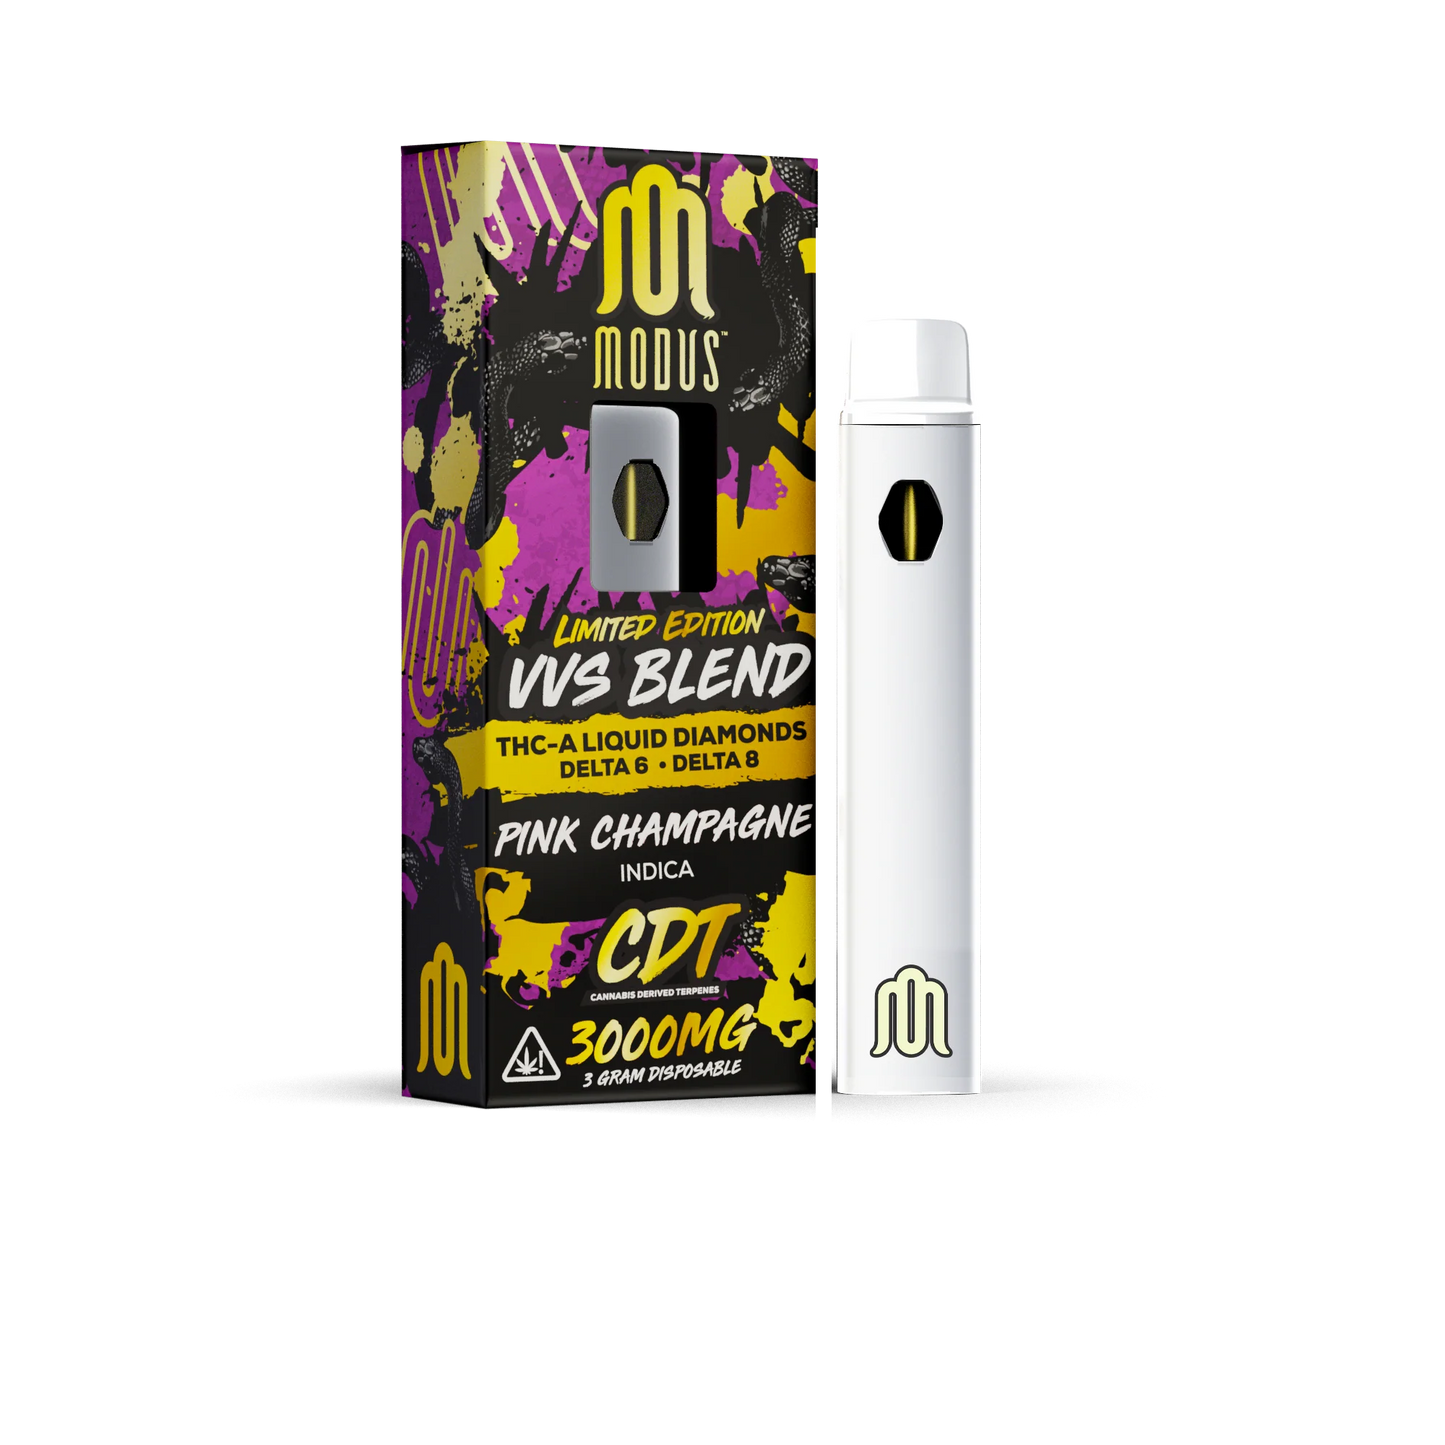 MODUS Limited Edition VVS Blend THC Disposable Vapes | 3G